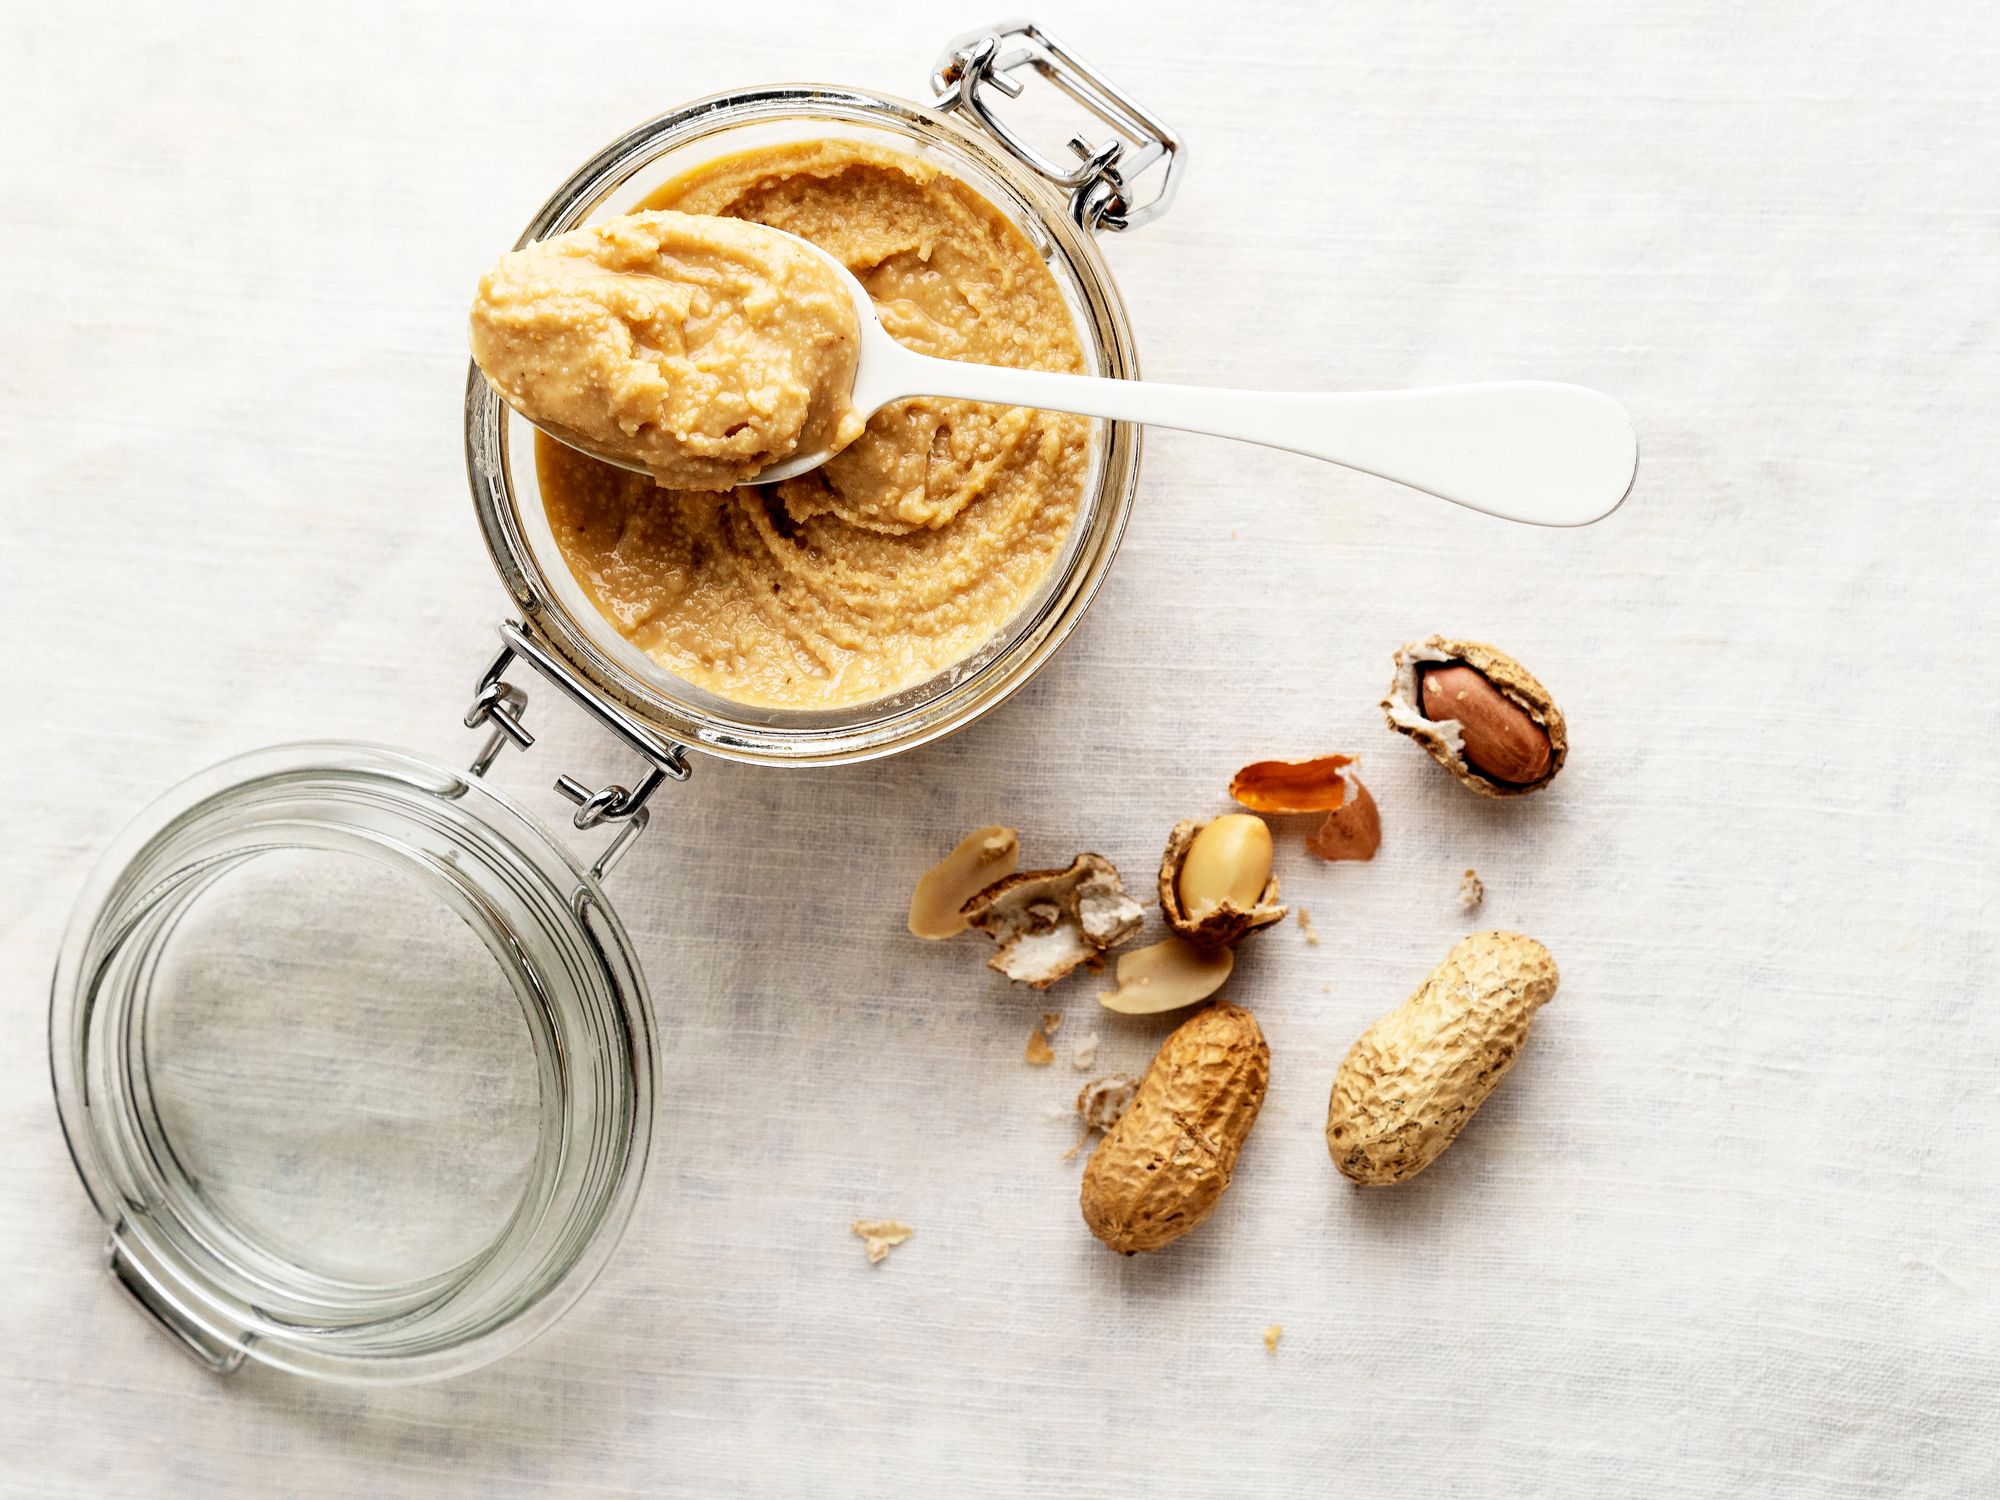 Beurre de cacahuète ou purée de cacahuète : bienfaits et recettes